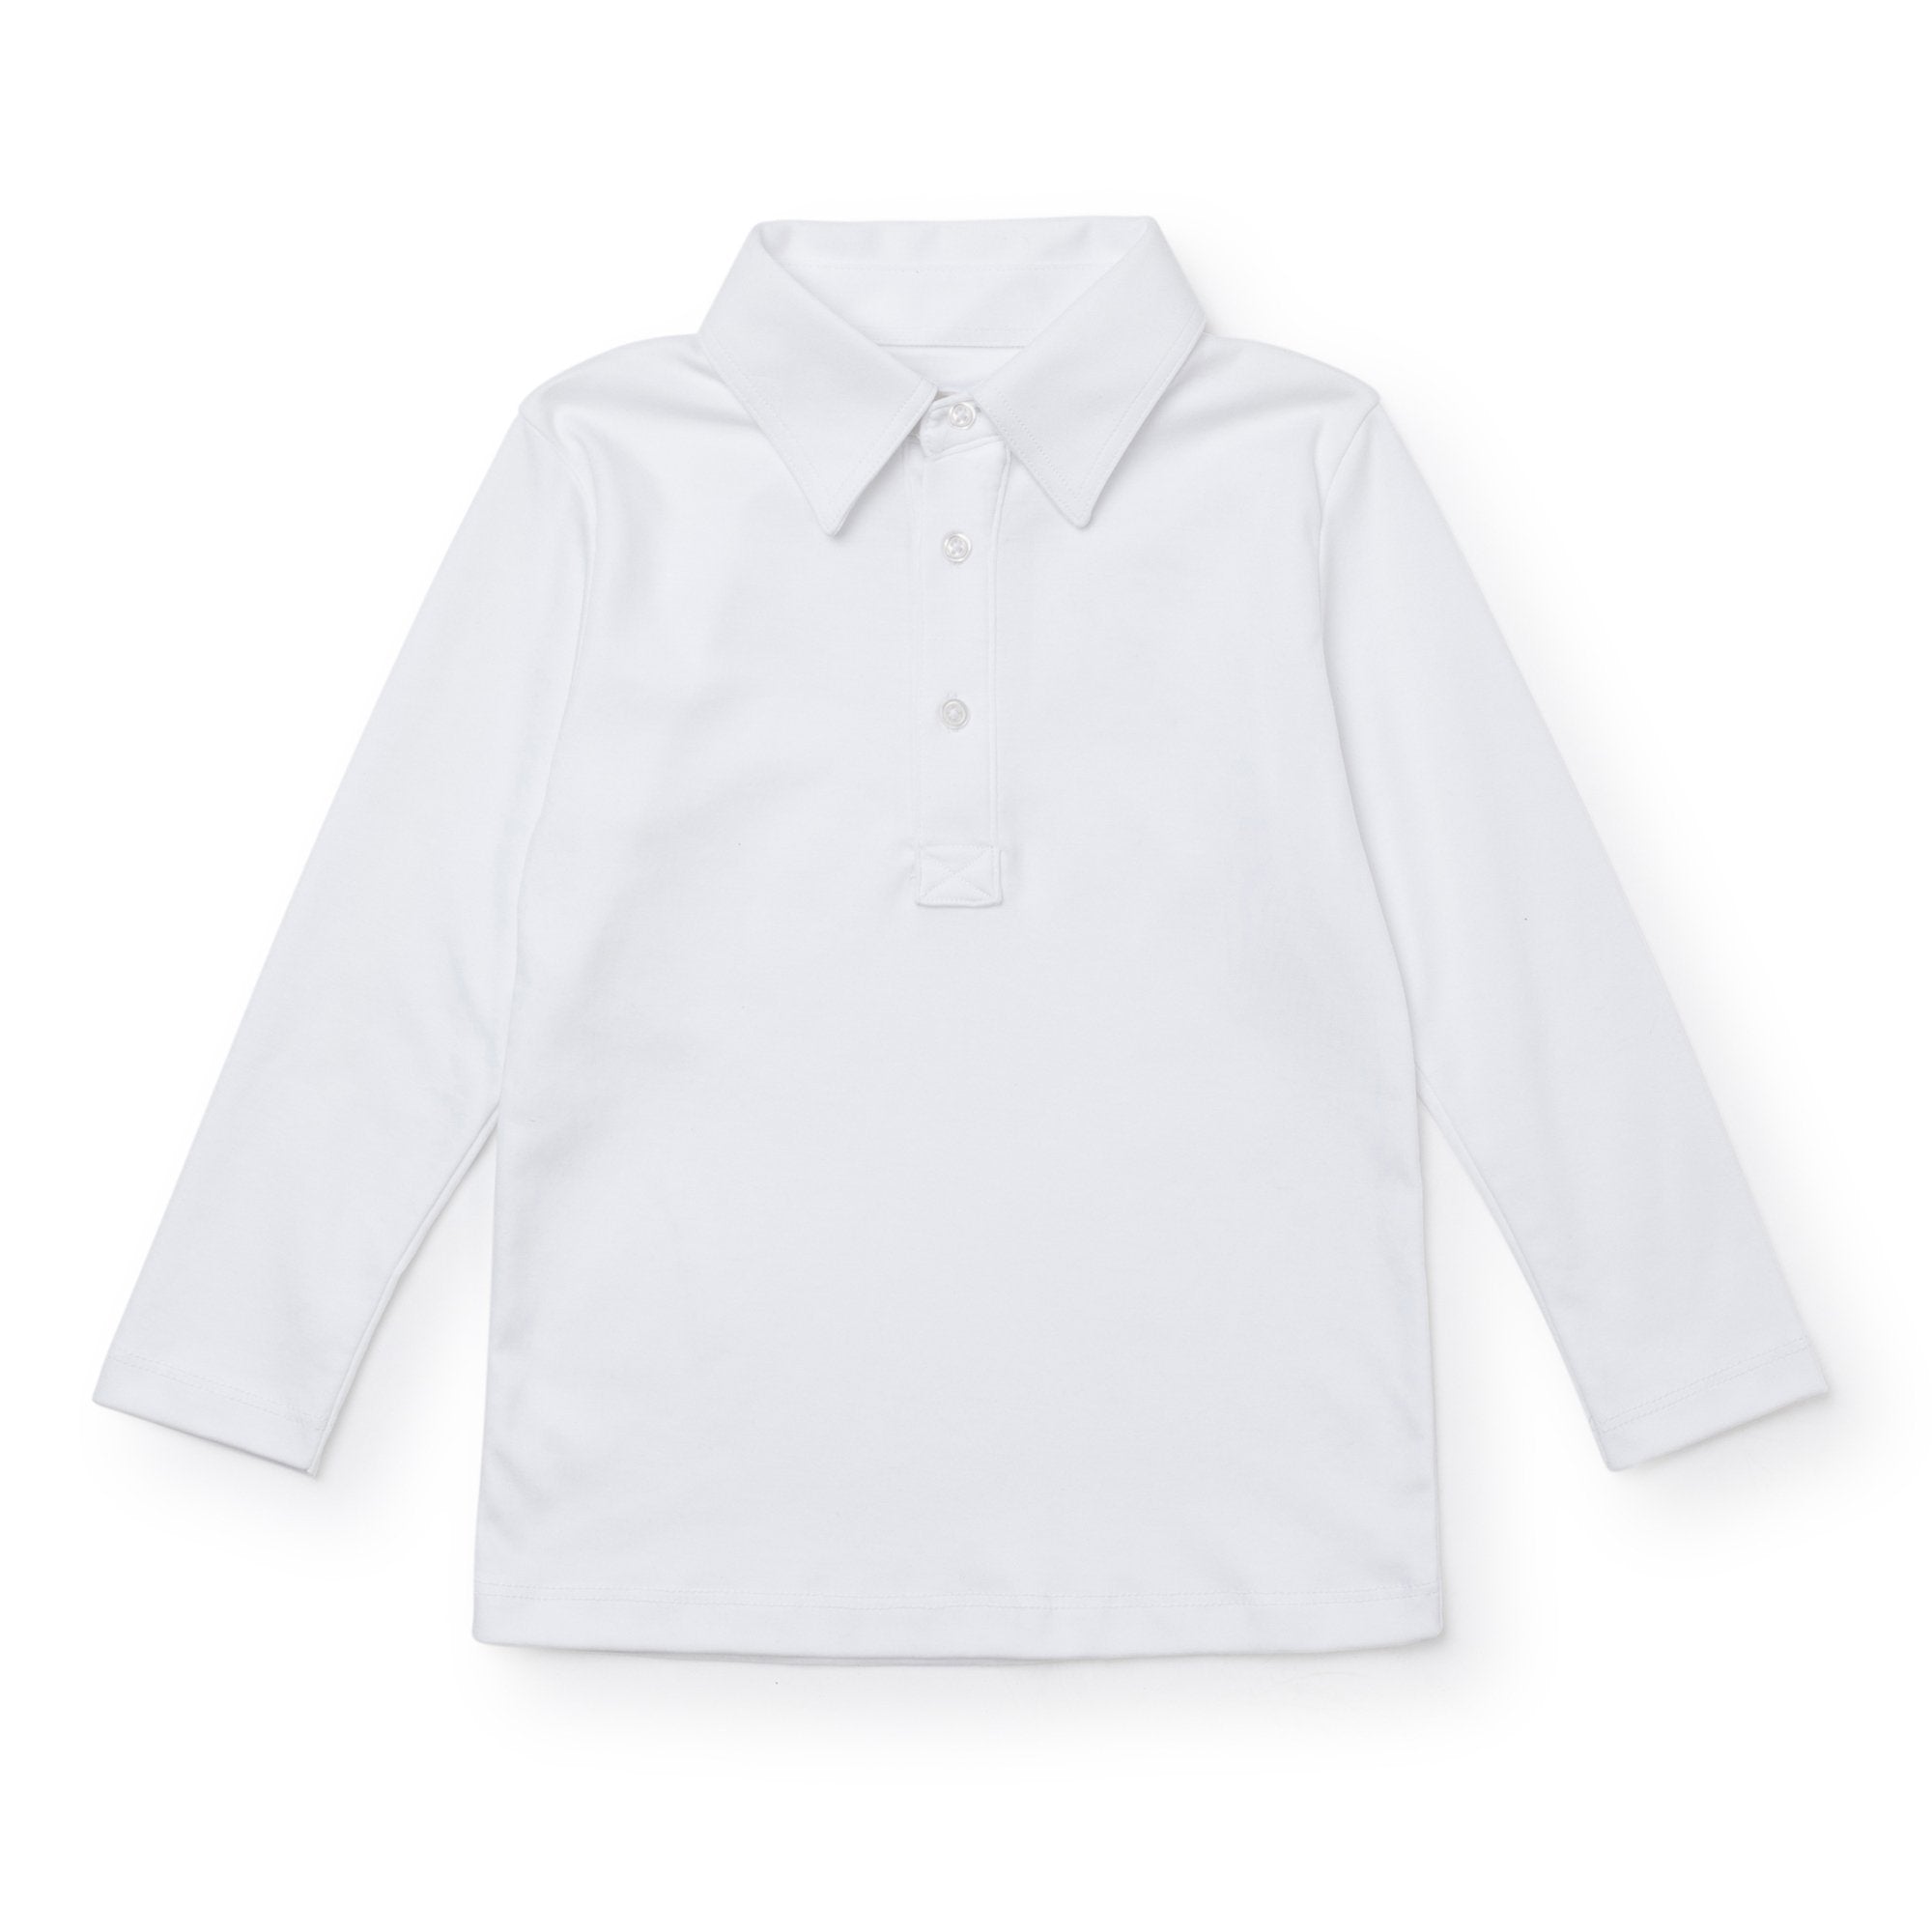 Finn Pima Cotton Long Sleeve Polo For Boys - White